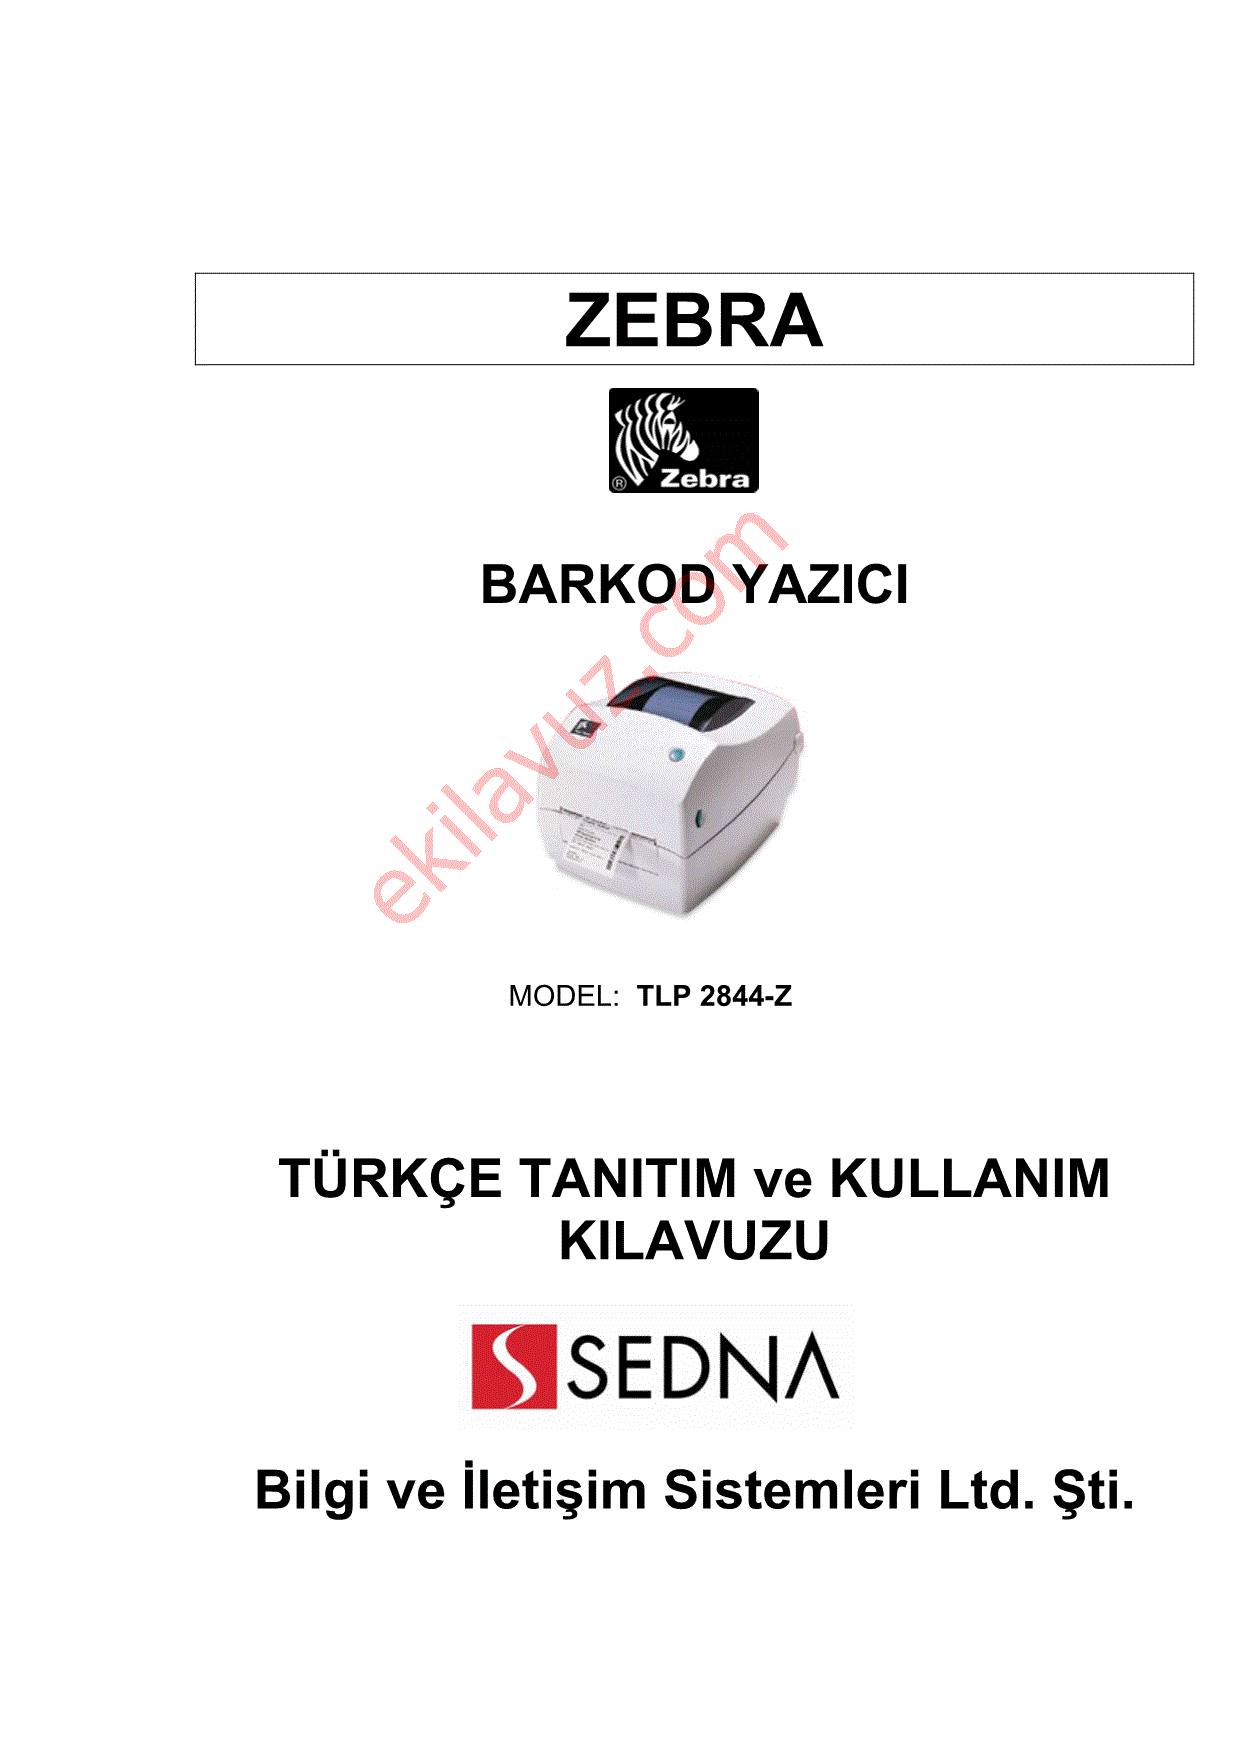 zebra lp 2844 z manual